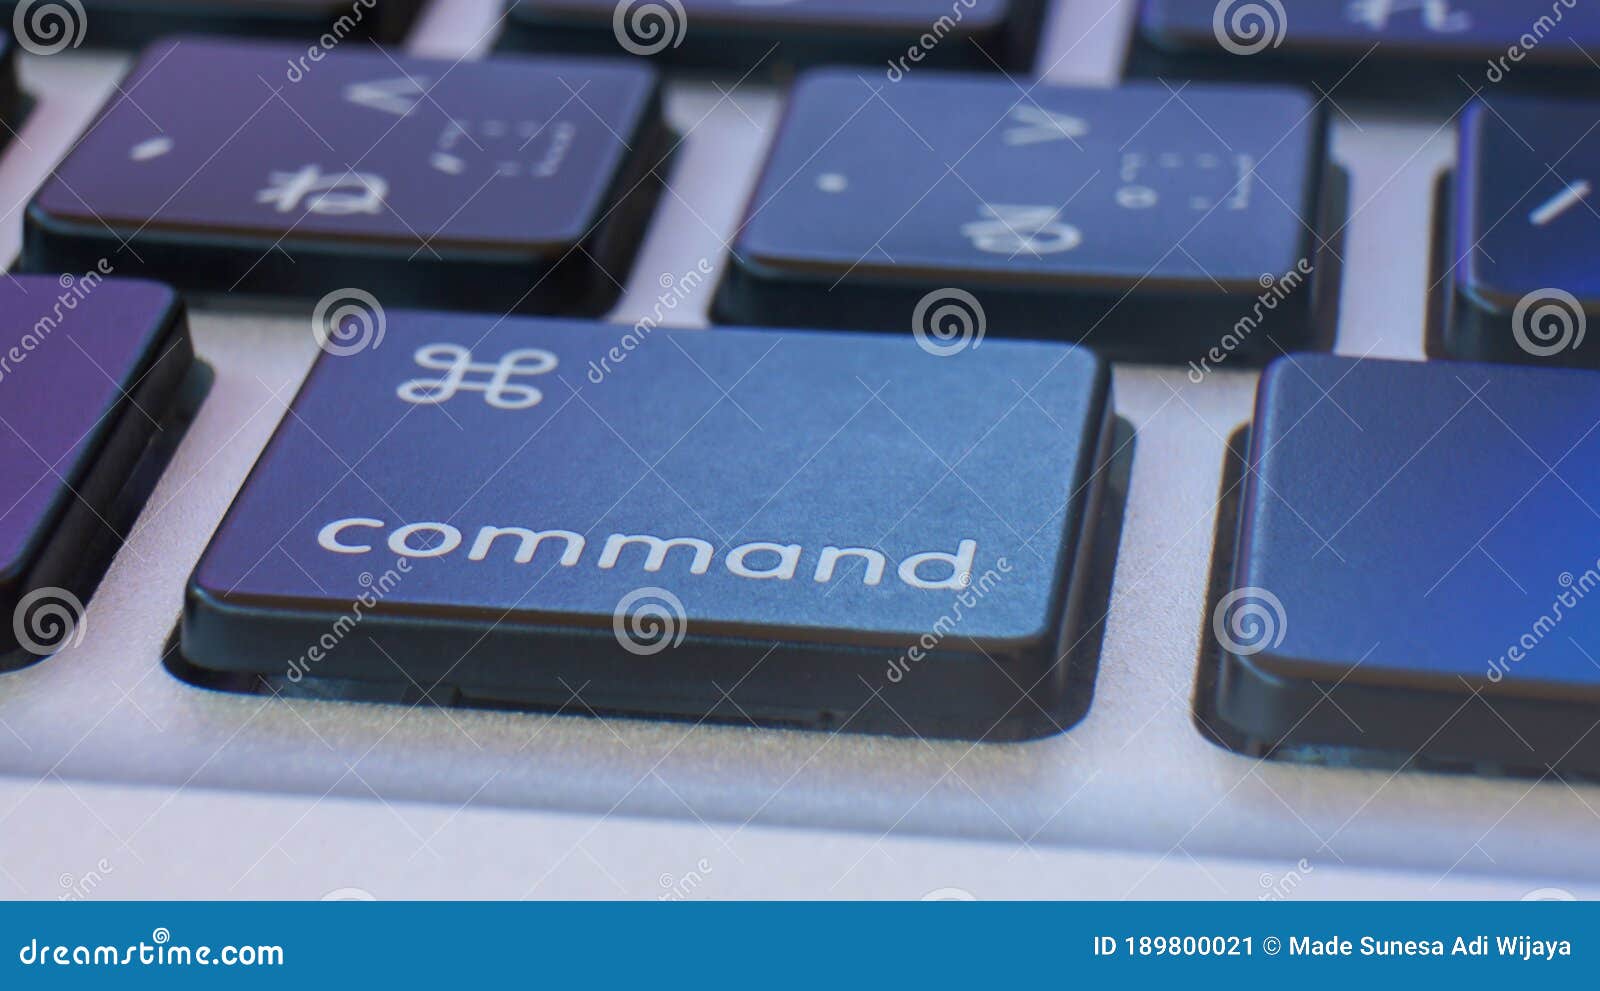 Com comando de voz. Командные кнопки это в информатике. Command Key.